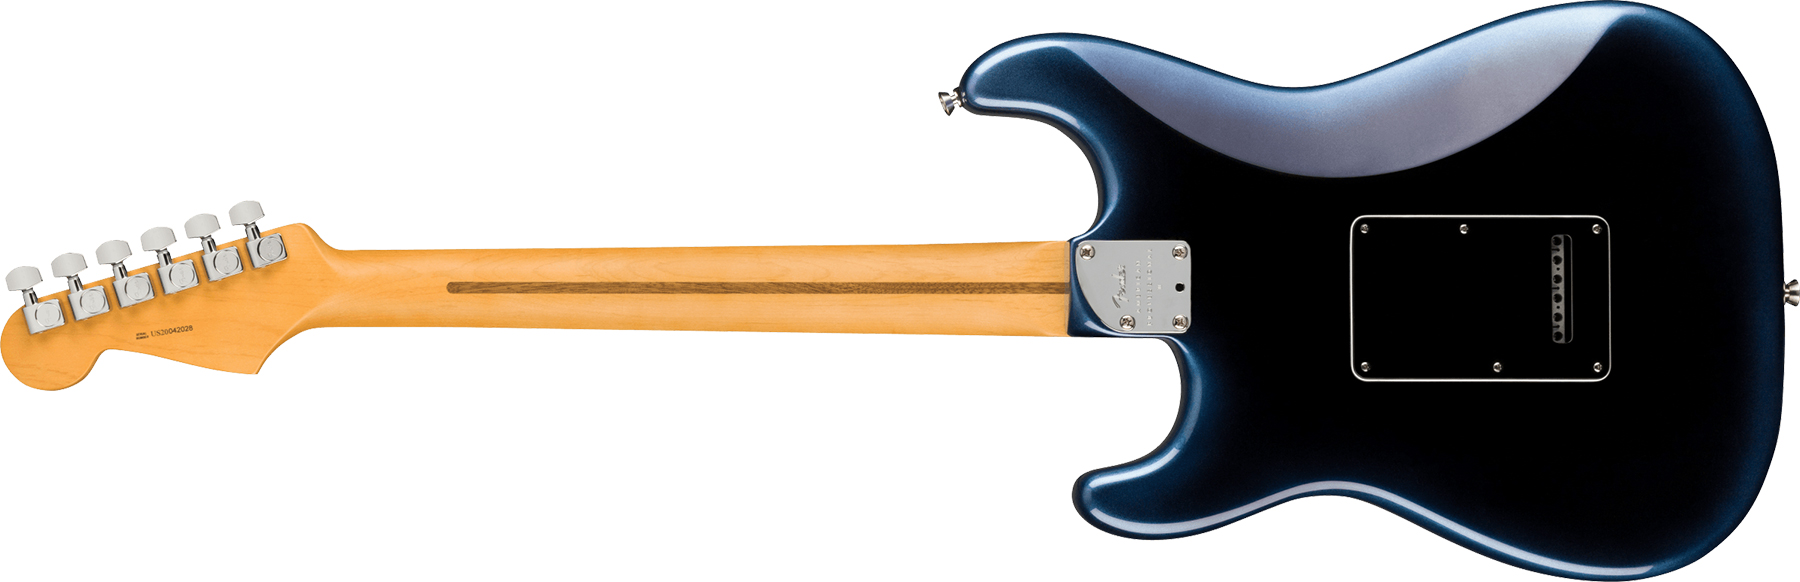 Fender Strat American Professional Ii Hss Usa Rw - Dark Night - Elektrische gitaar in Str-vorm - Variation 1